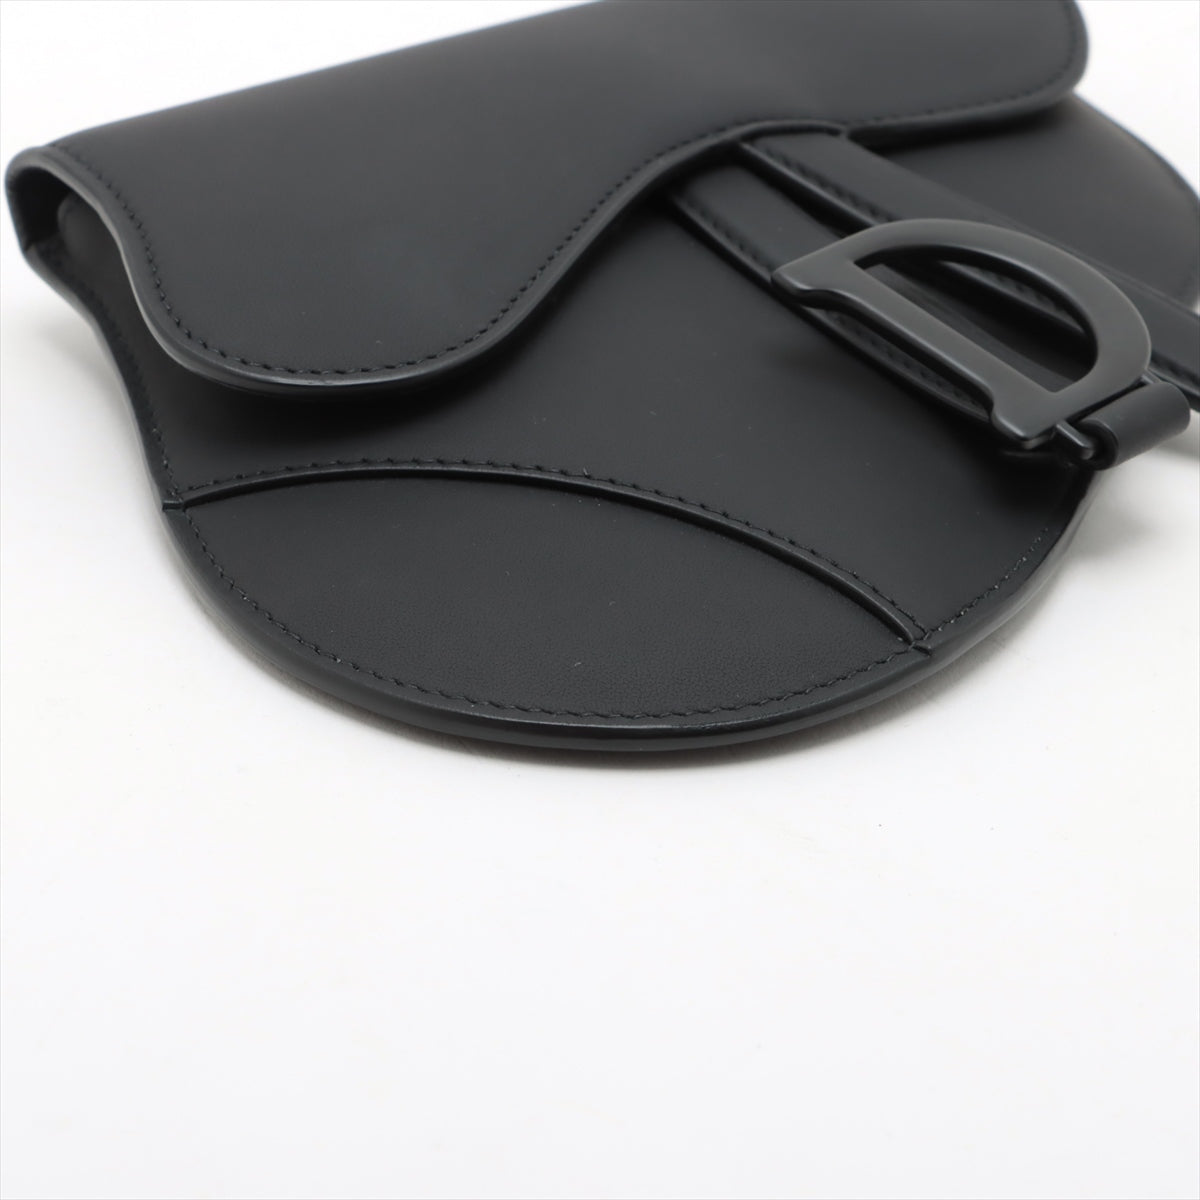 Christian Dior Saddle Leather Sling backpack Black